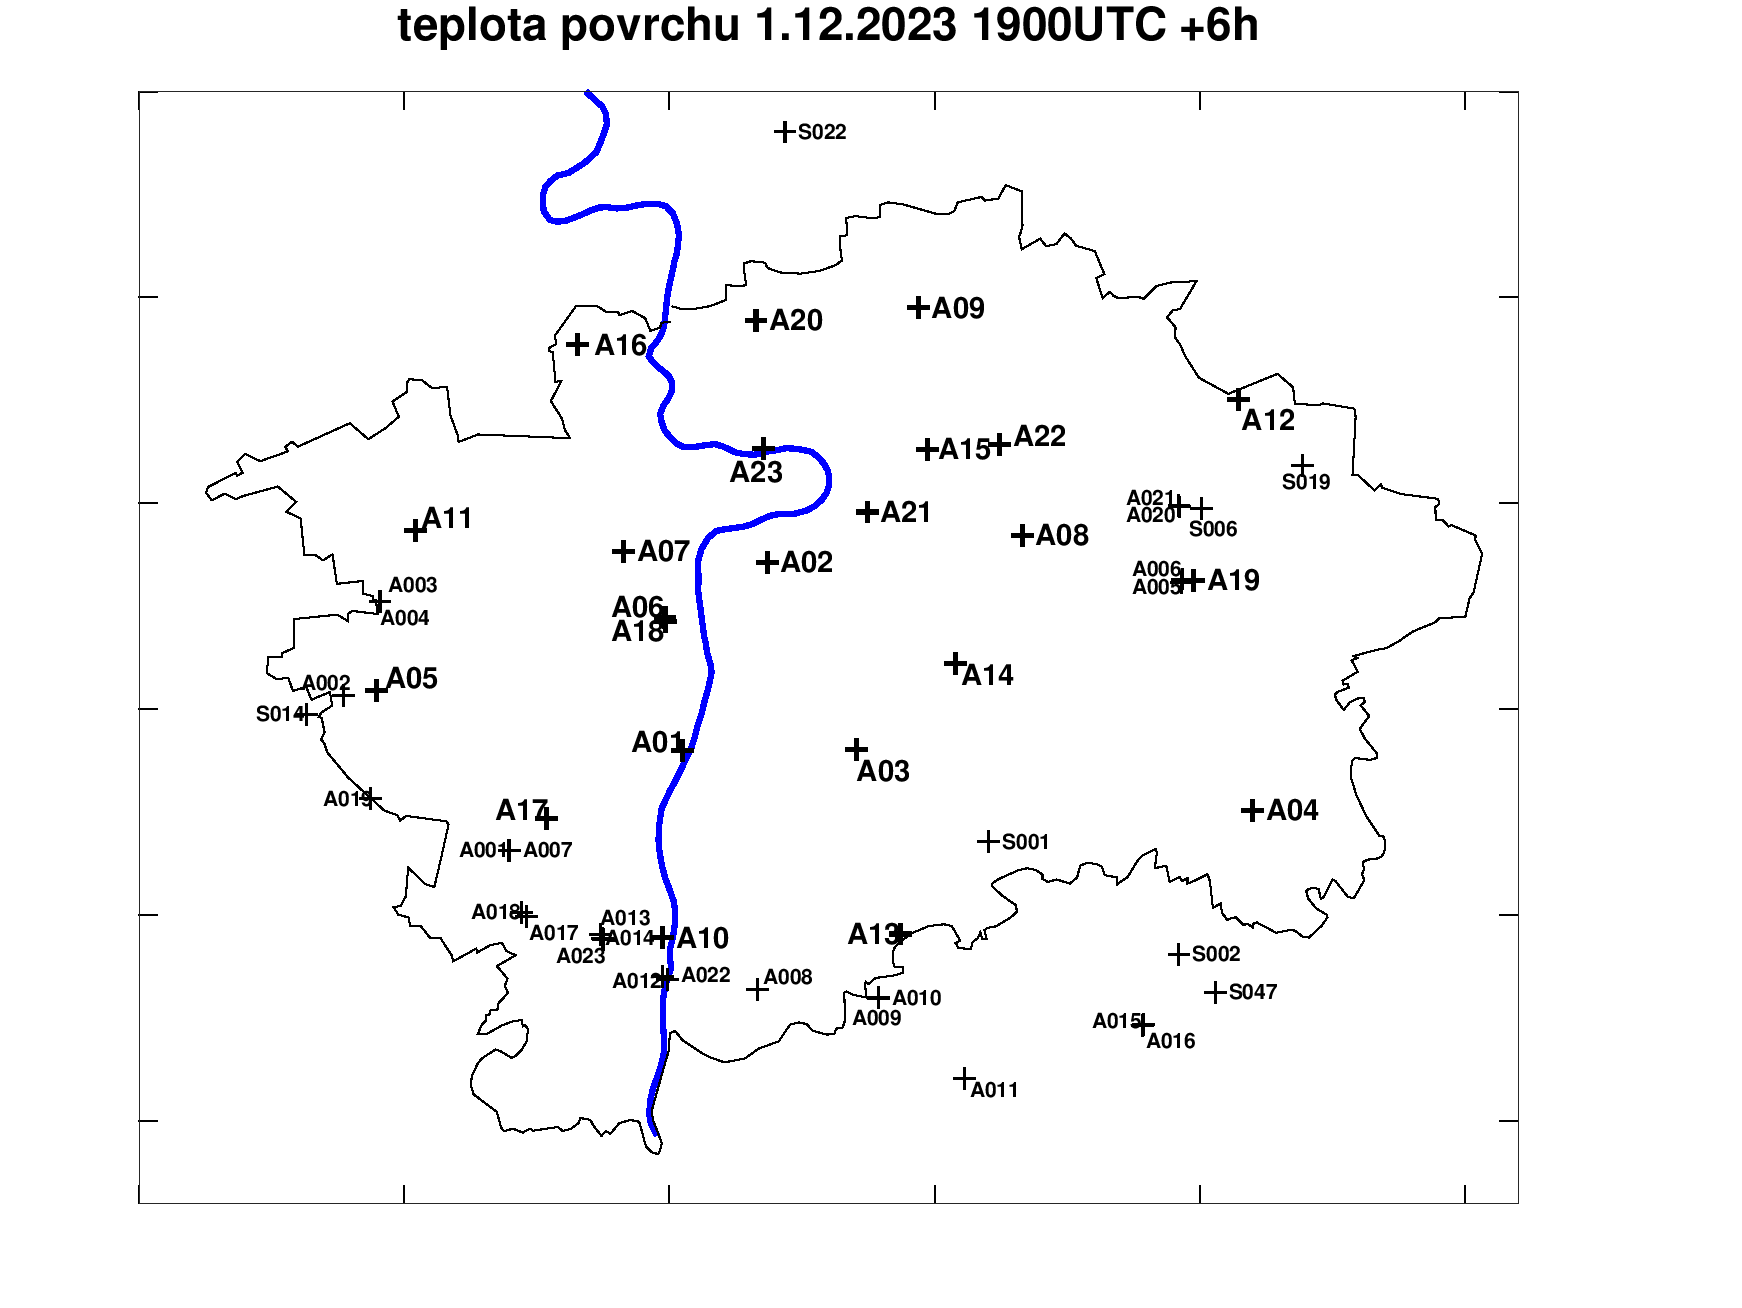 Předpověď teploty povrchu pražských silnic +6h